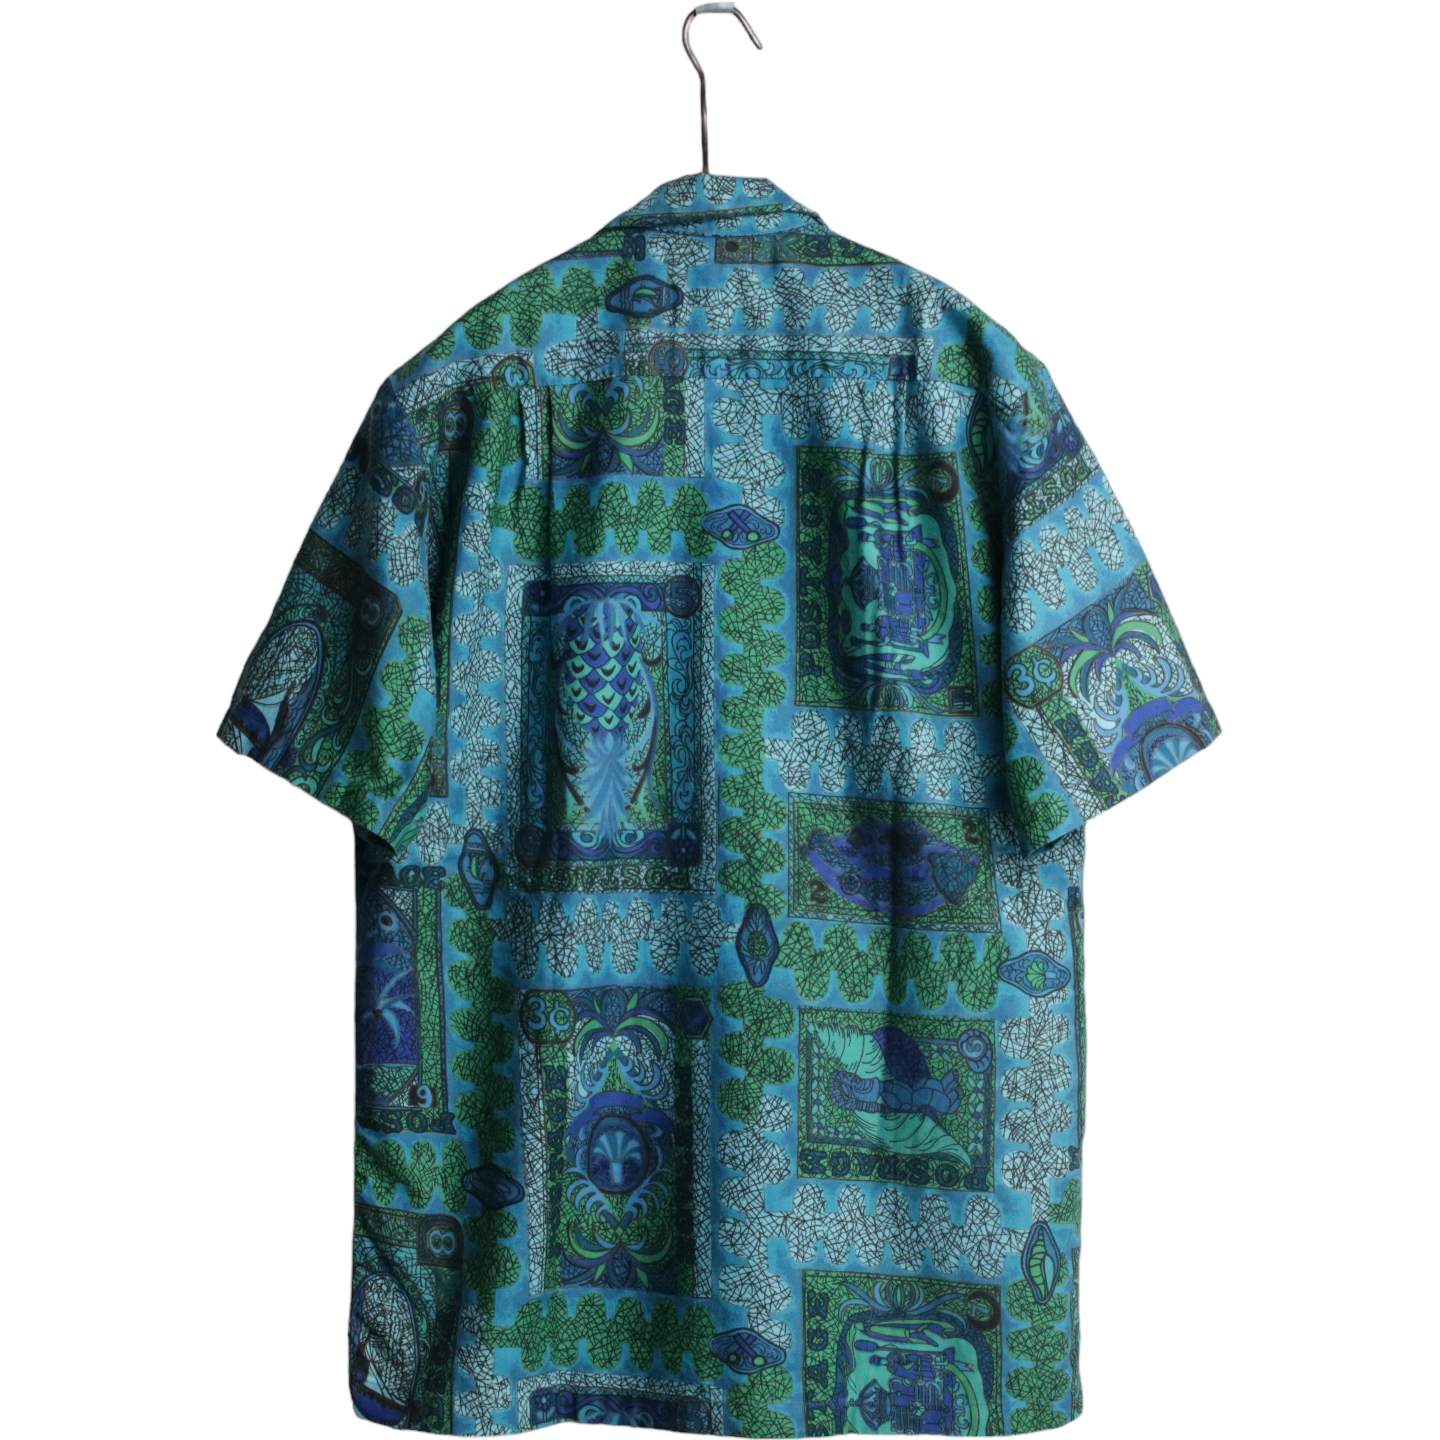 60s ANDRADE コットン ハワイアンシャツ アロハシャツ ープンカラー 総柄 緑 青 M程